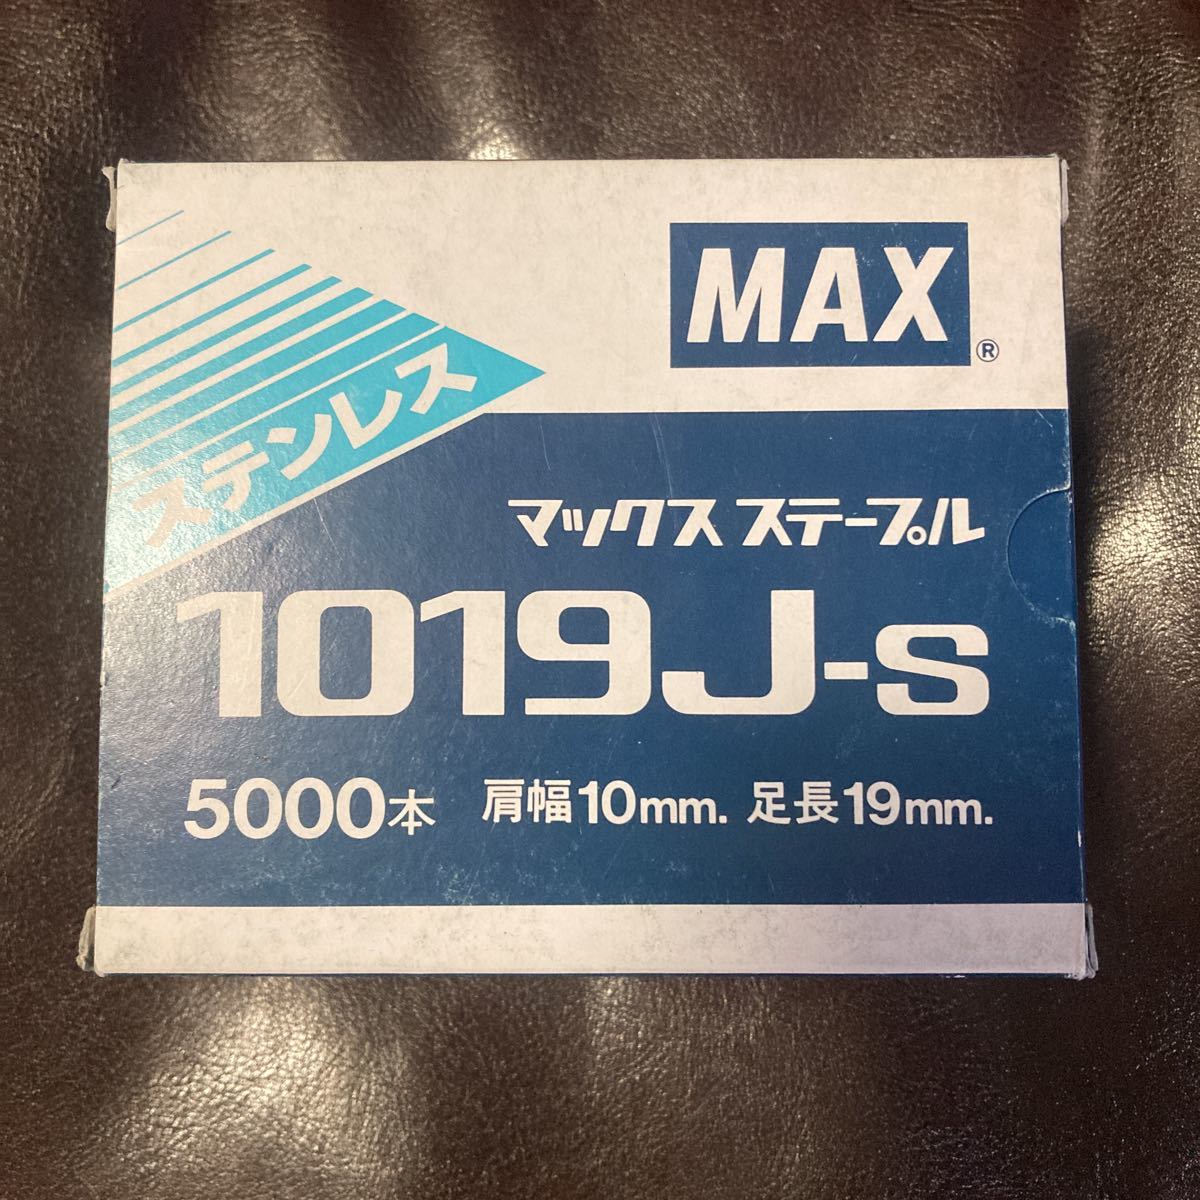 1019J S マックス ステープル ステンレス 5000本 肩幅10ｍｍ 足長19ｍｍ ステン MAX エアタッカー タッカー_画像1